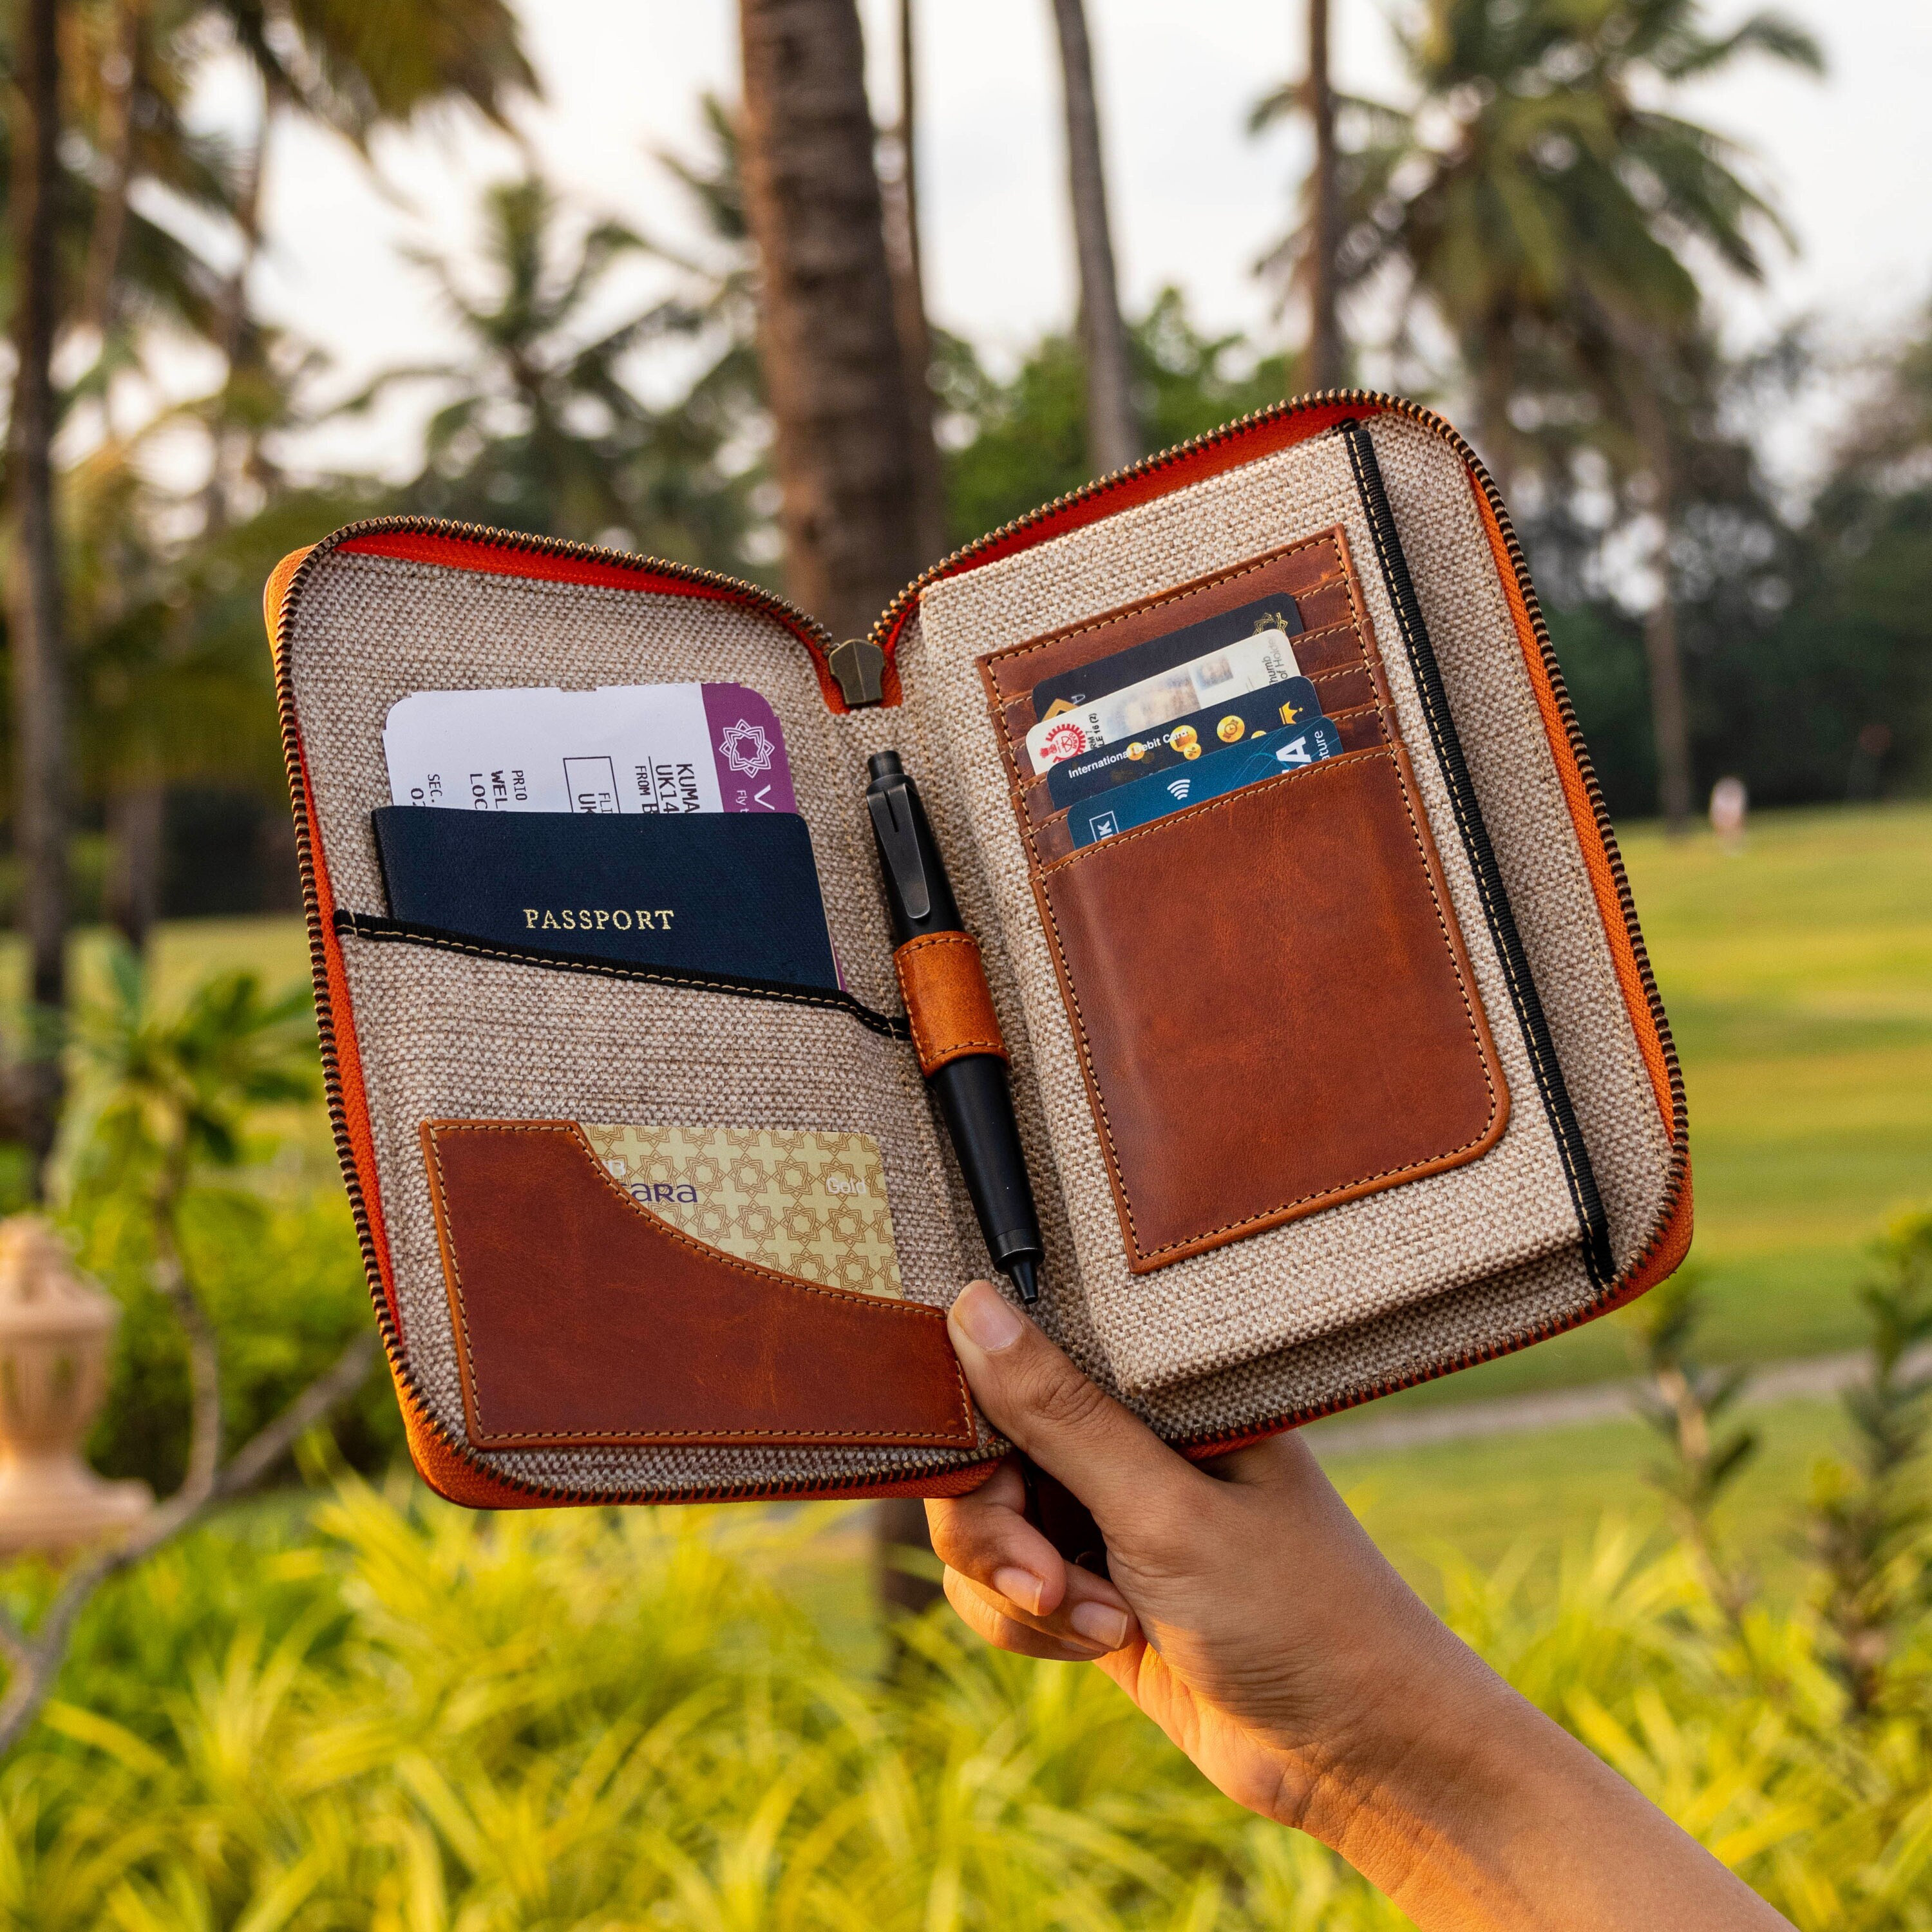 Buy Travel Wallet Passport Holder Online In India -  India